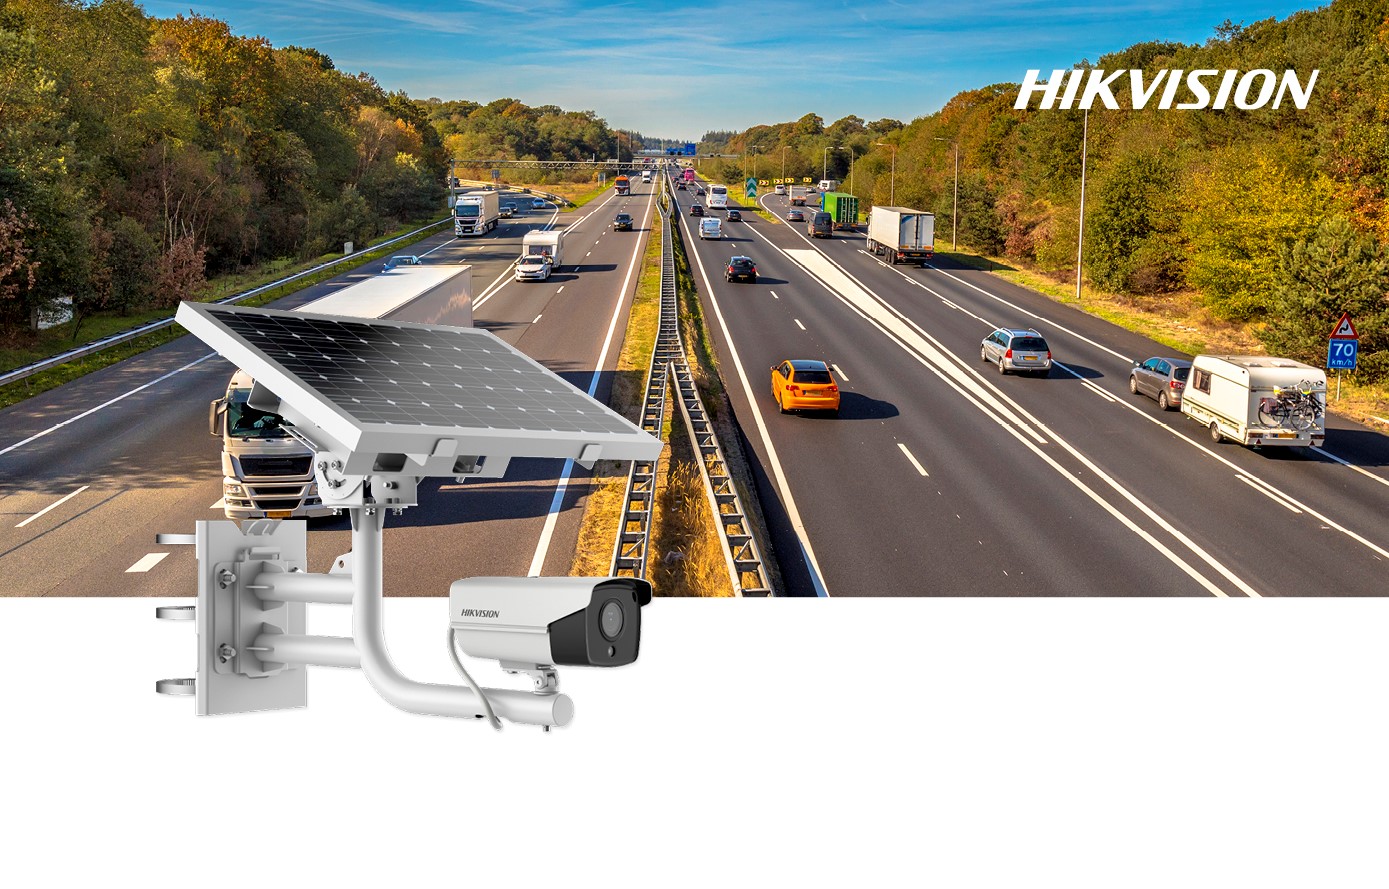 Telecamera Hikvision con pannello solare 4G: sicurezza ad energia